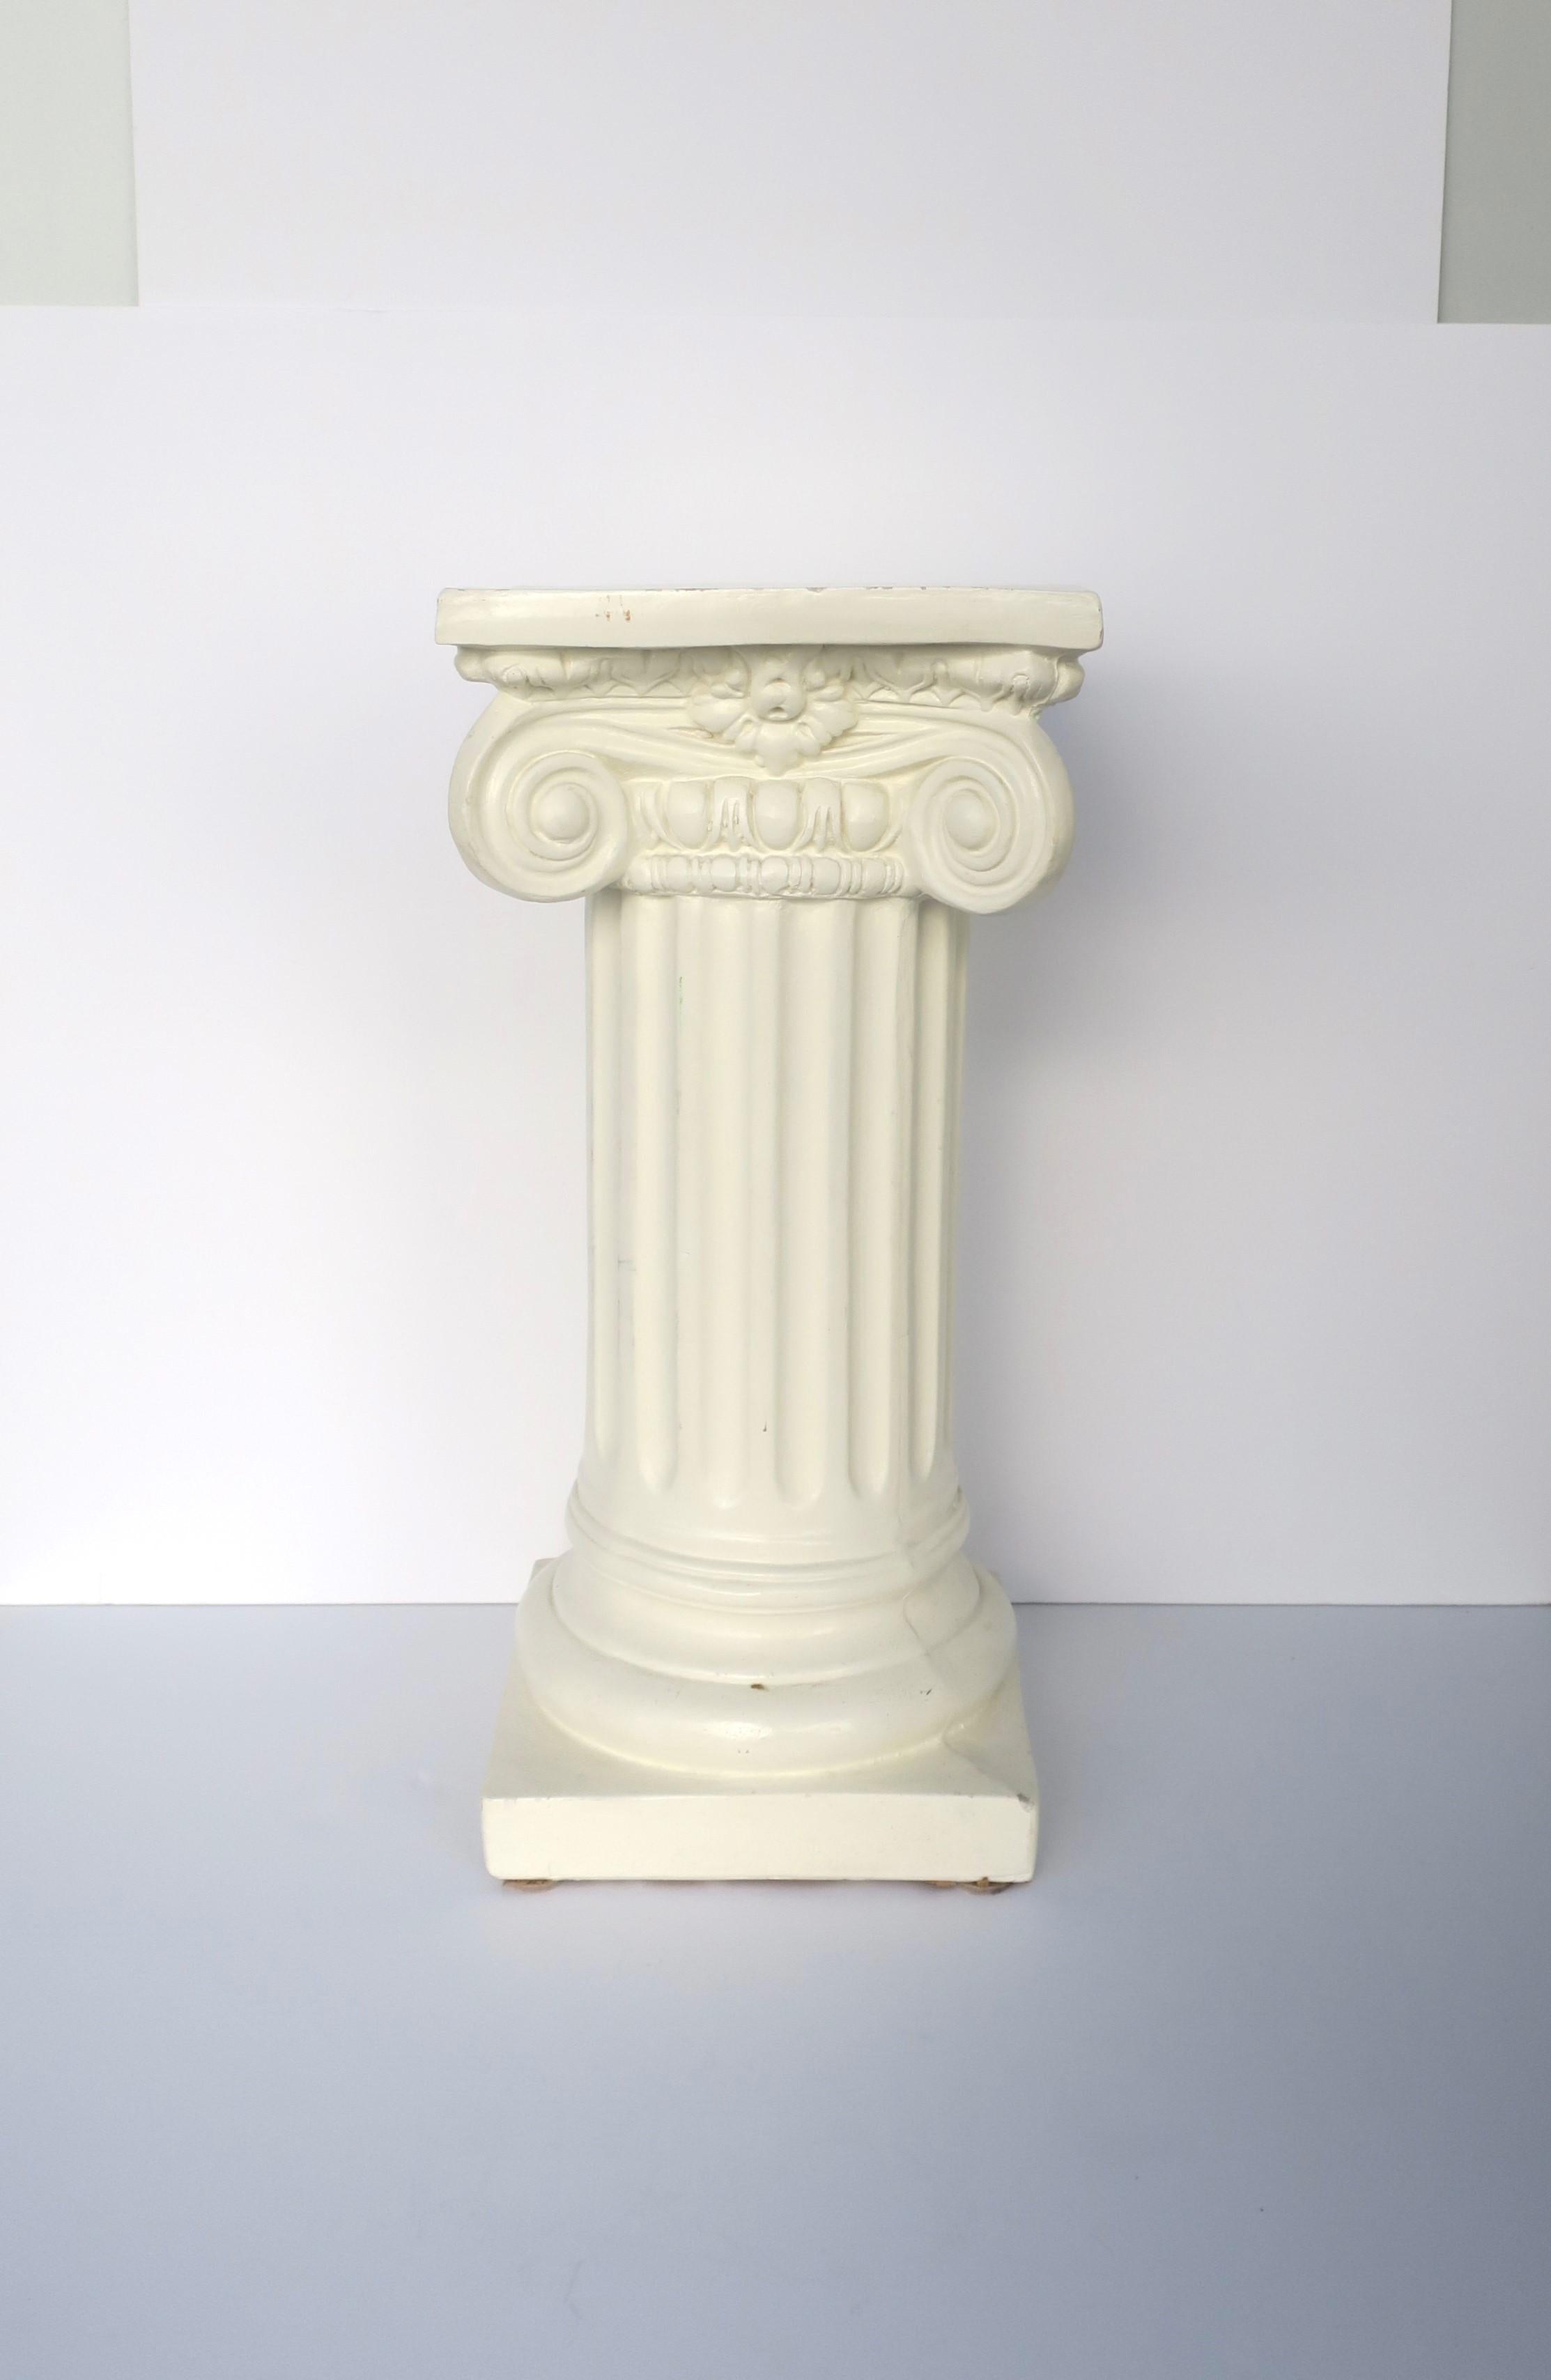 Socle à colonne d'ordre ionique en plâtre émaillé de style néoclassique, vers le milieu ou la fin du XXe siècle. La pièce est un plâtre glacé blanc cassé. Une pièce idéale pour une sculpture, une plante, des livres, une lumière/lampe (présentée avec